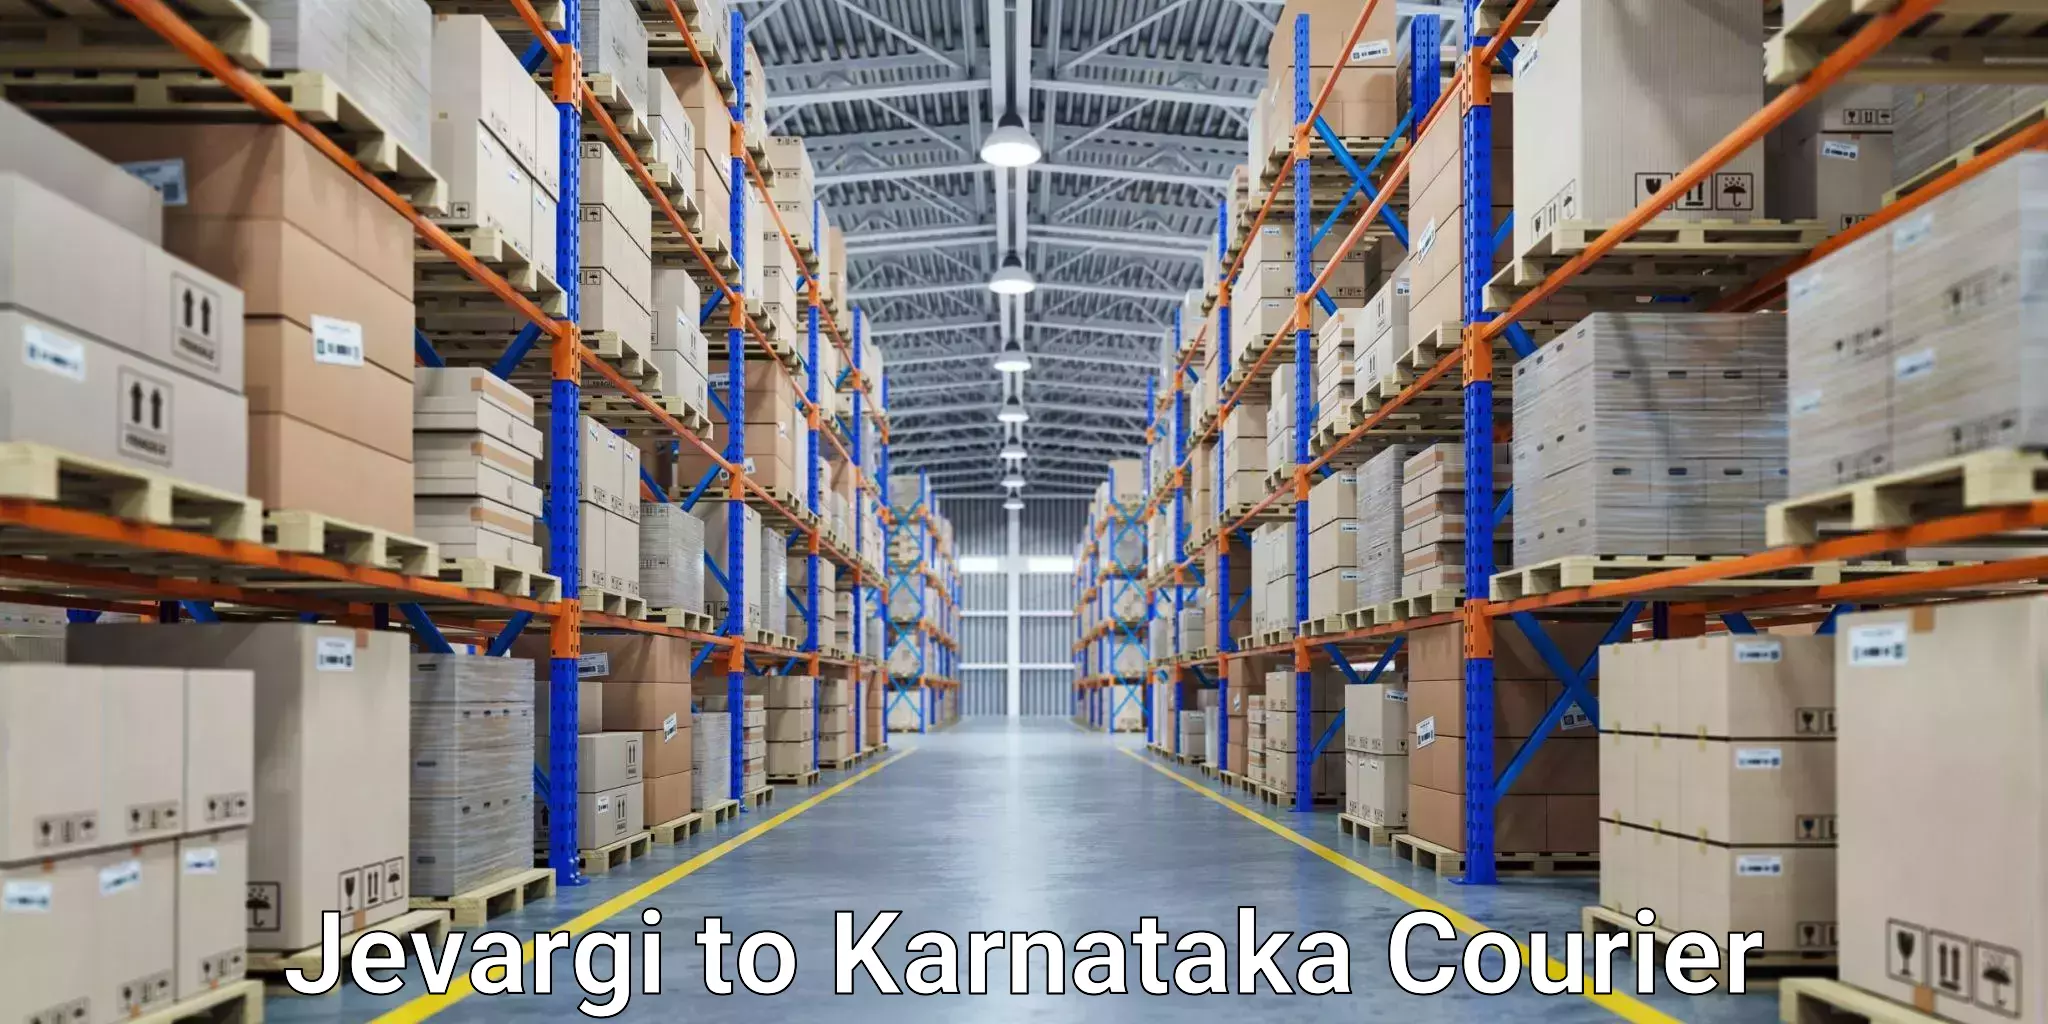 Logistics service provider Jevargi to Karnataka